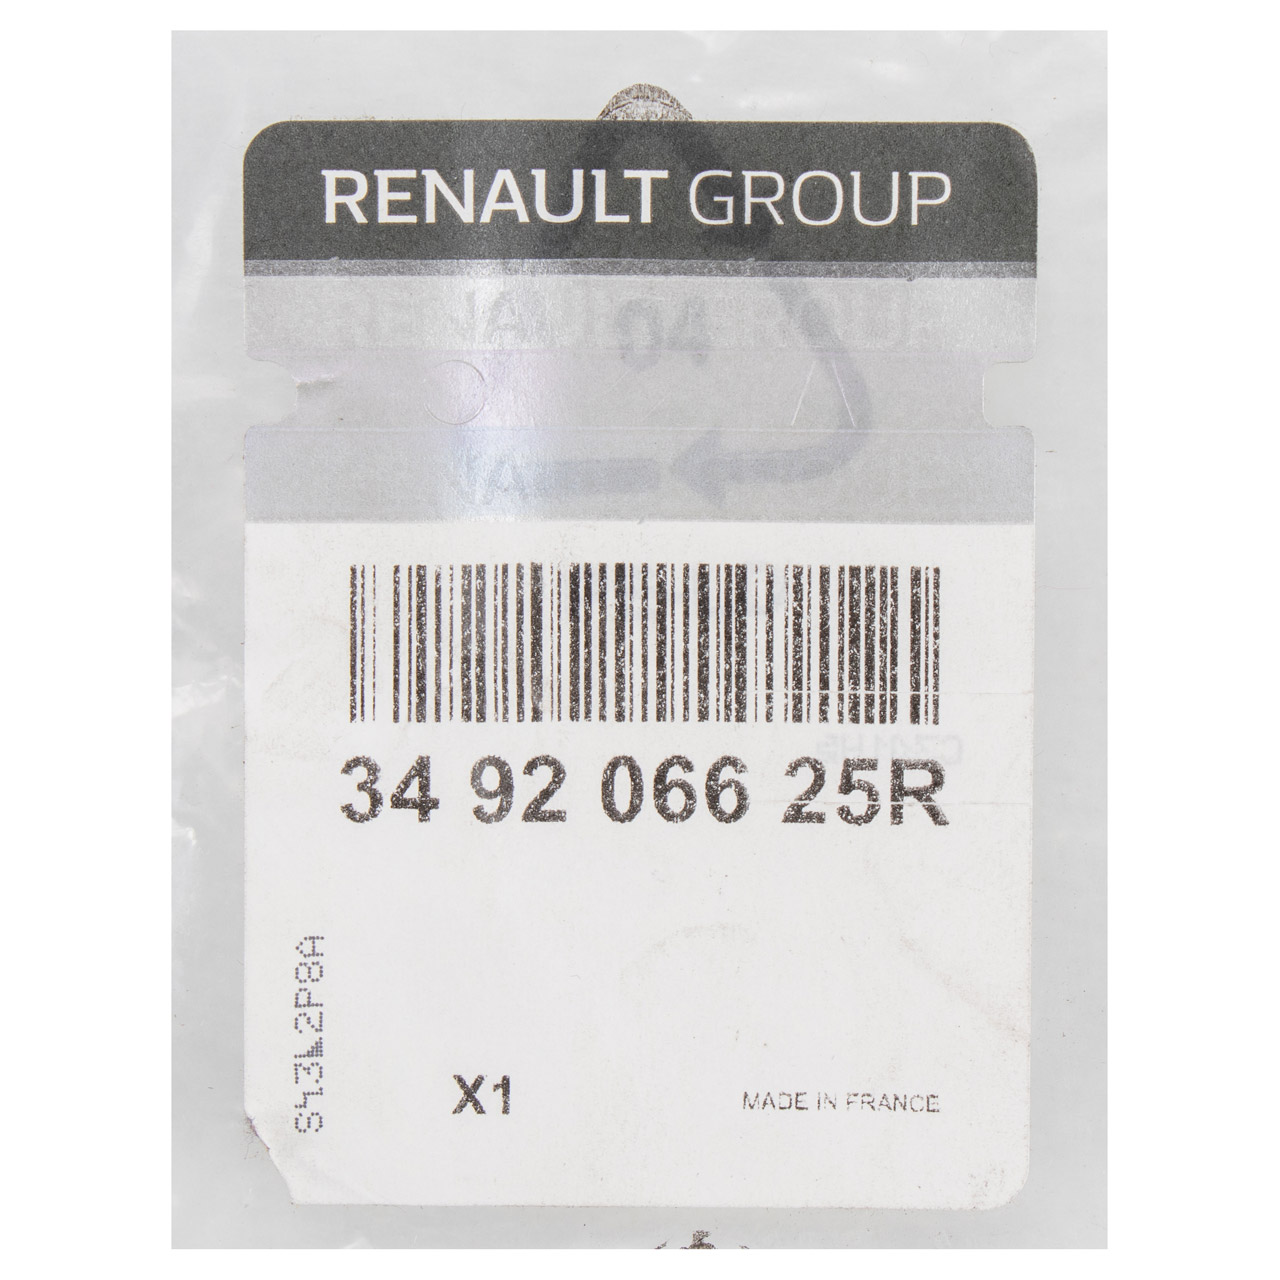 ORIGINAL Renault Schaltknauf Schalthebel 7-Gang Schaltung Megane 4 349206625R